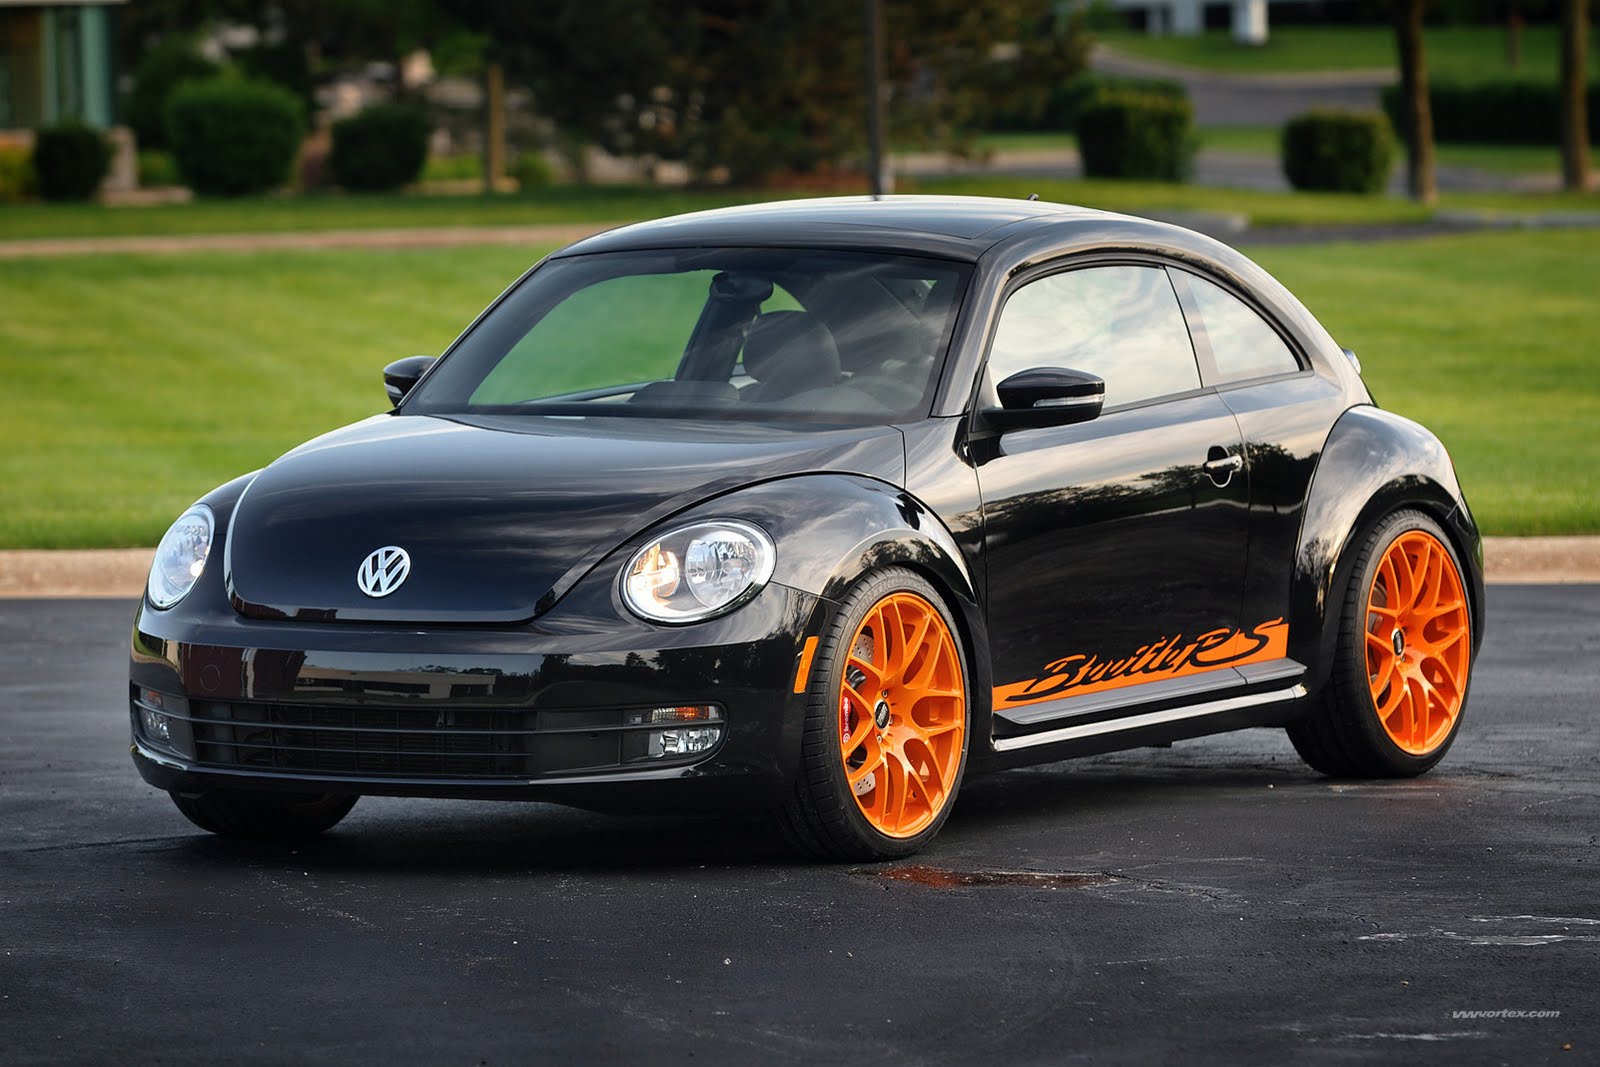 Volkswagen Beetle 1.4